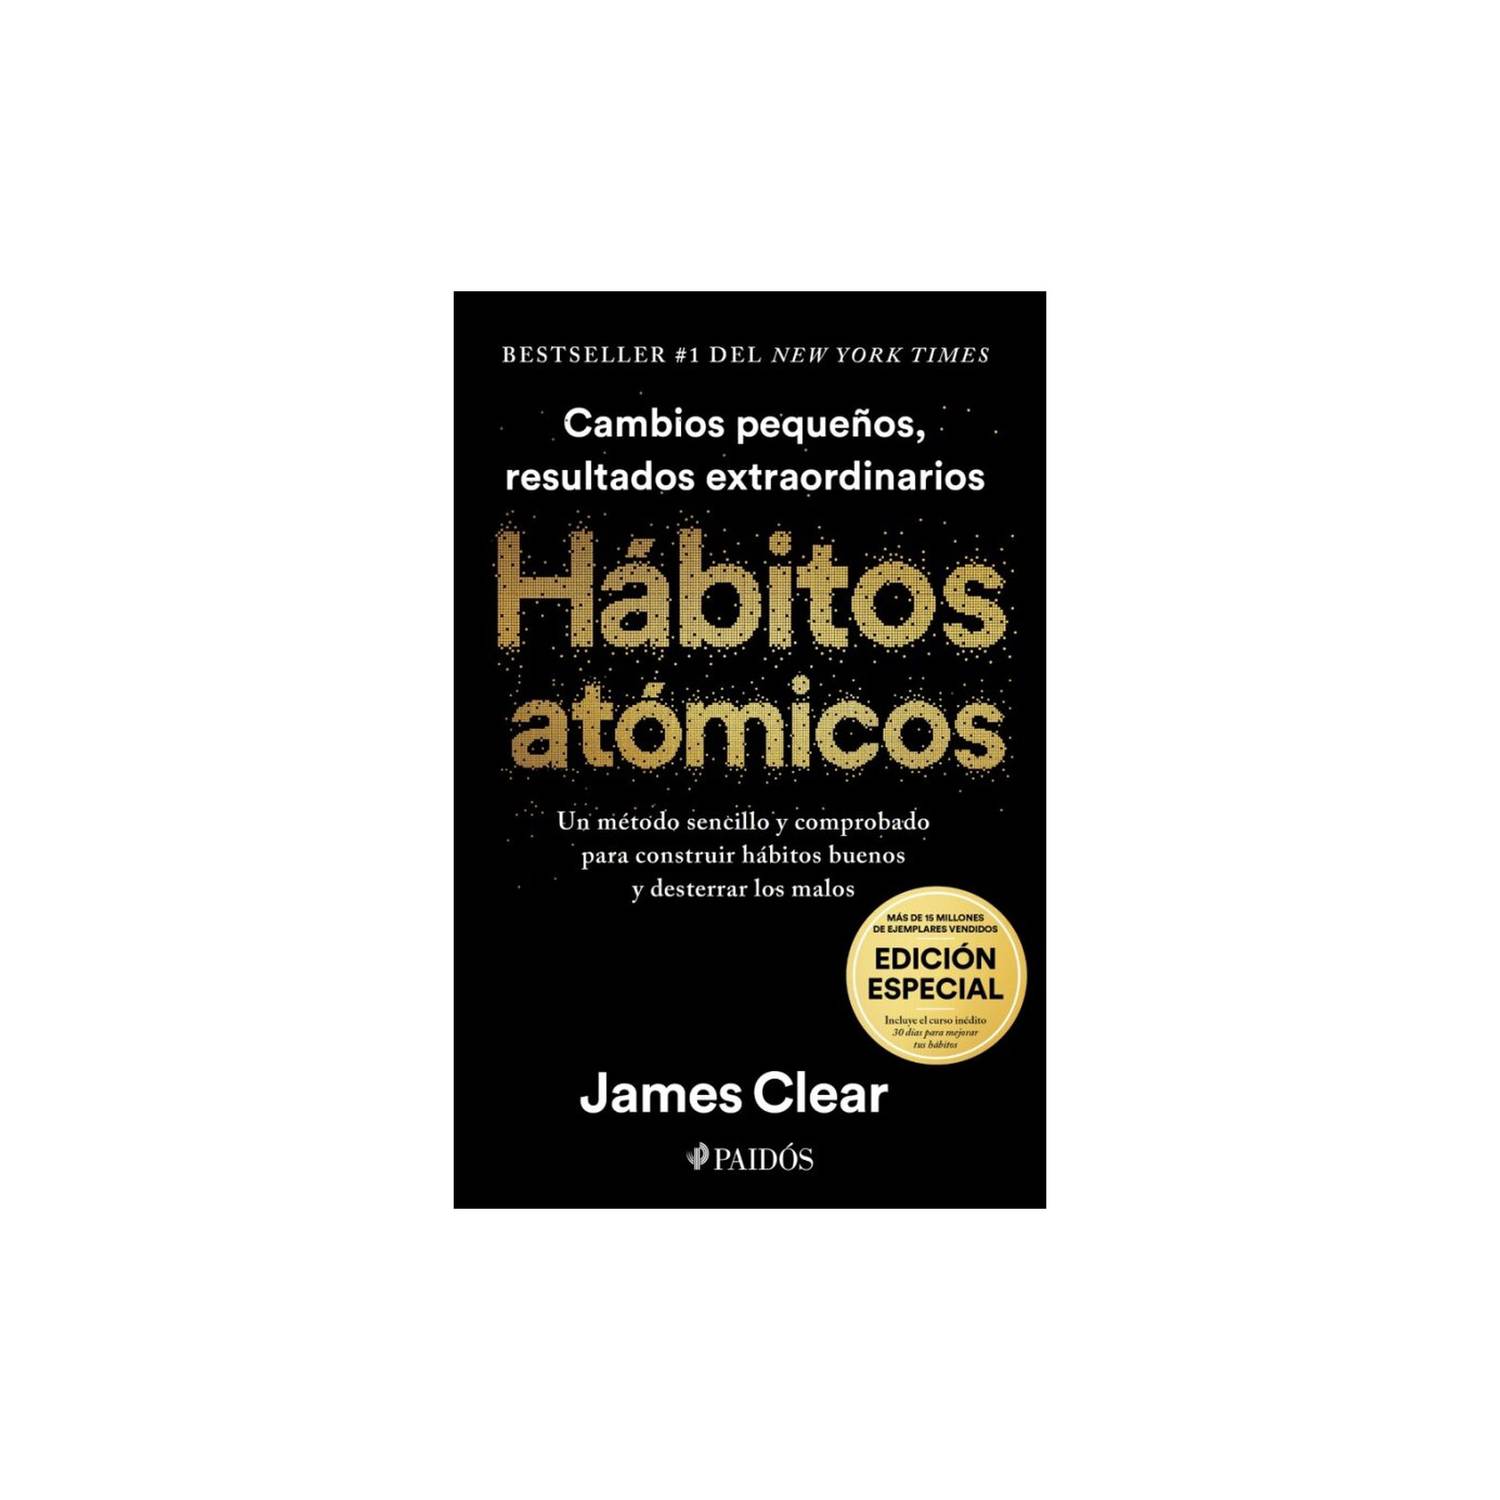 Libro de Autoayuda Hábitos Atómicos por James Clear PAIDOS